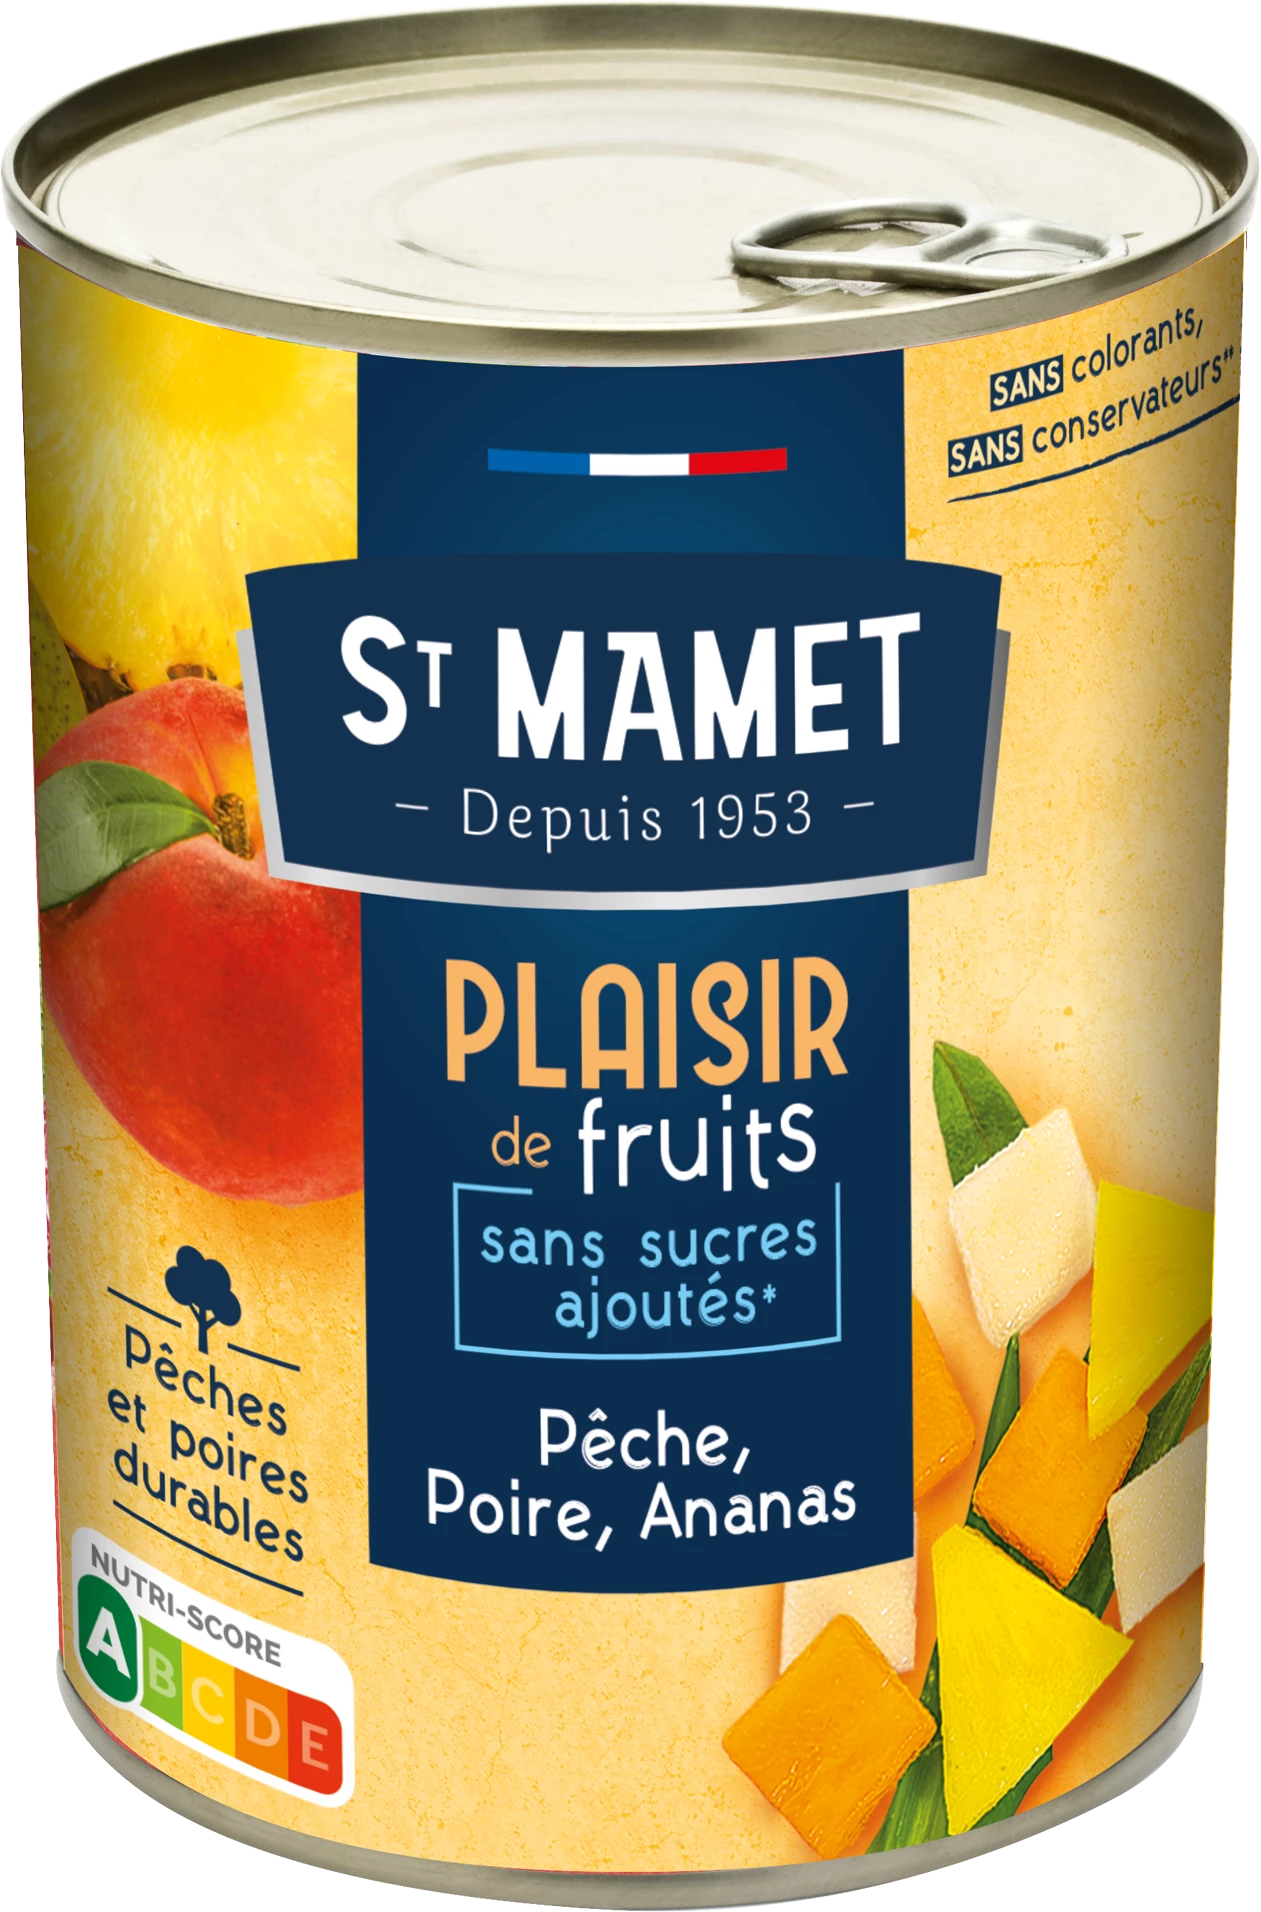 水果桃、梨、菠萝糖浆无添加糖 412g - ST MAMET